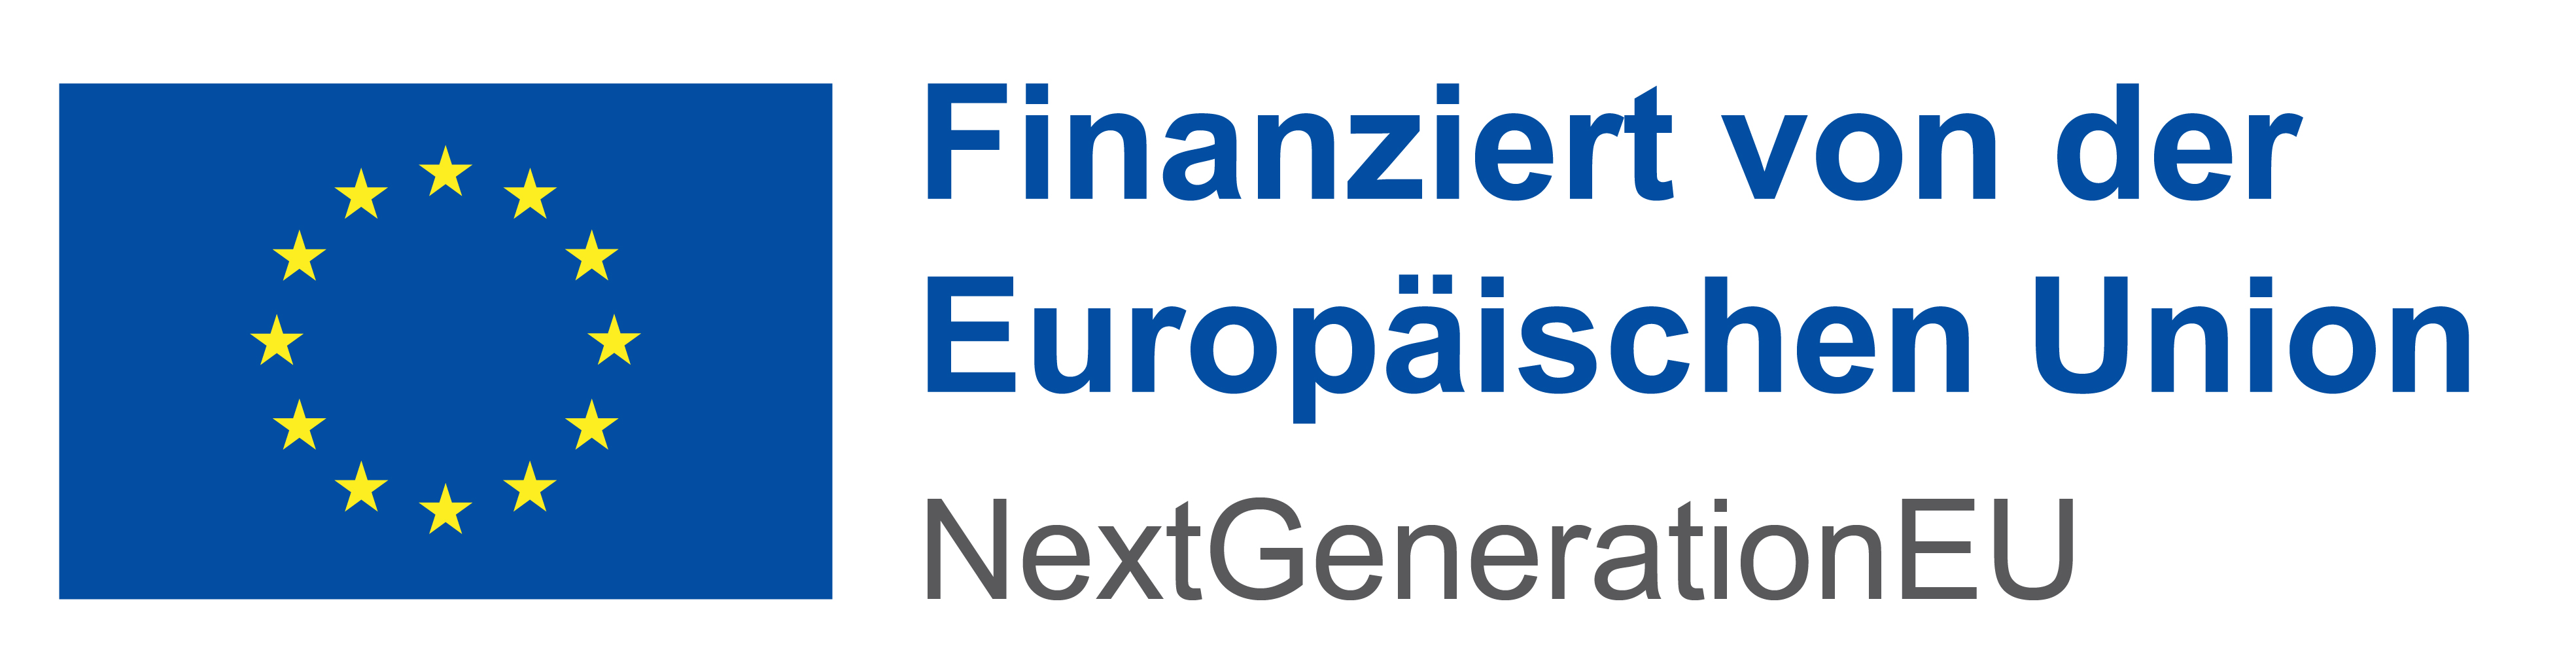 Logo der Europäischen Union mit der Beschriftung „Finaziert von der Europäischen Union. Next Generation EU“